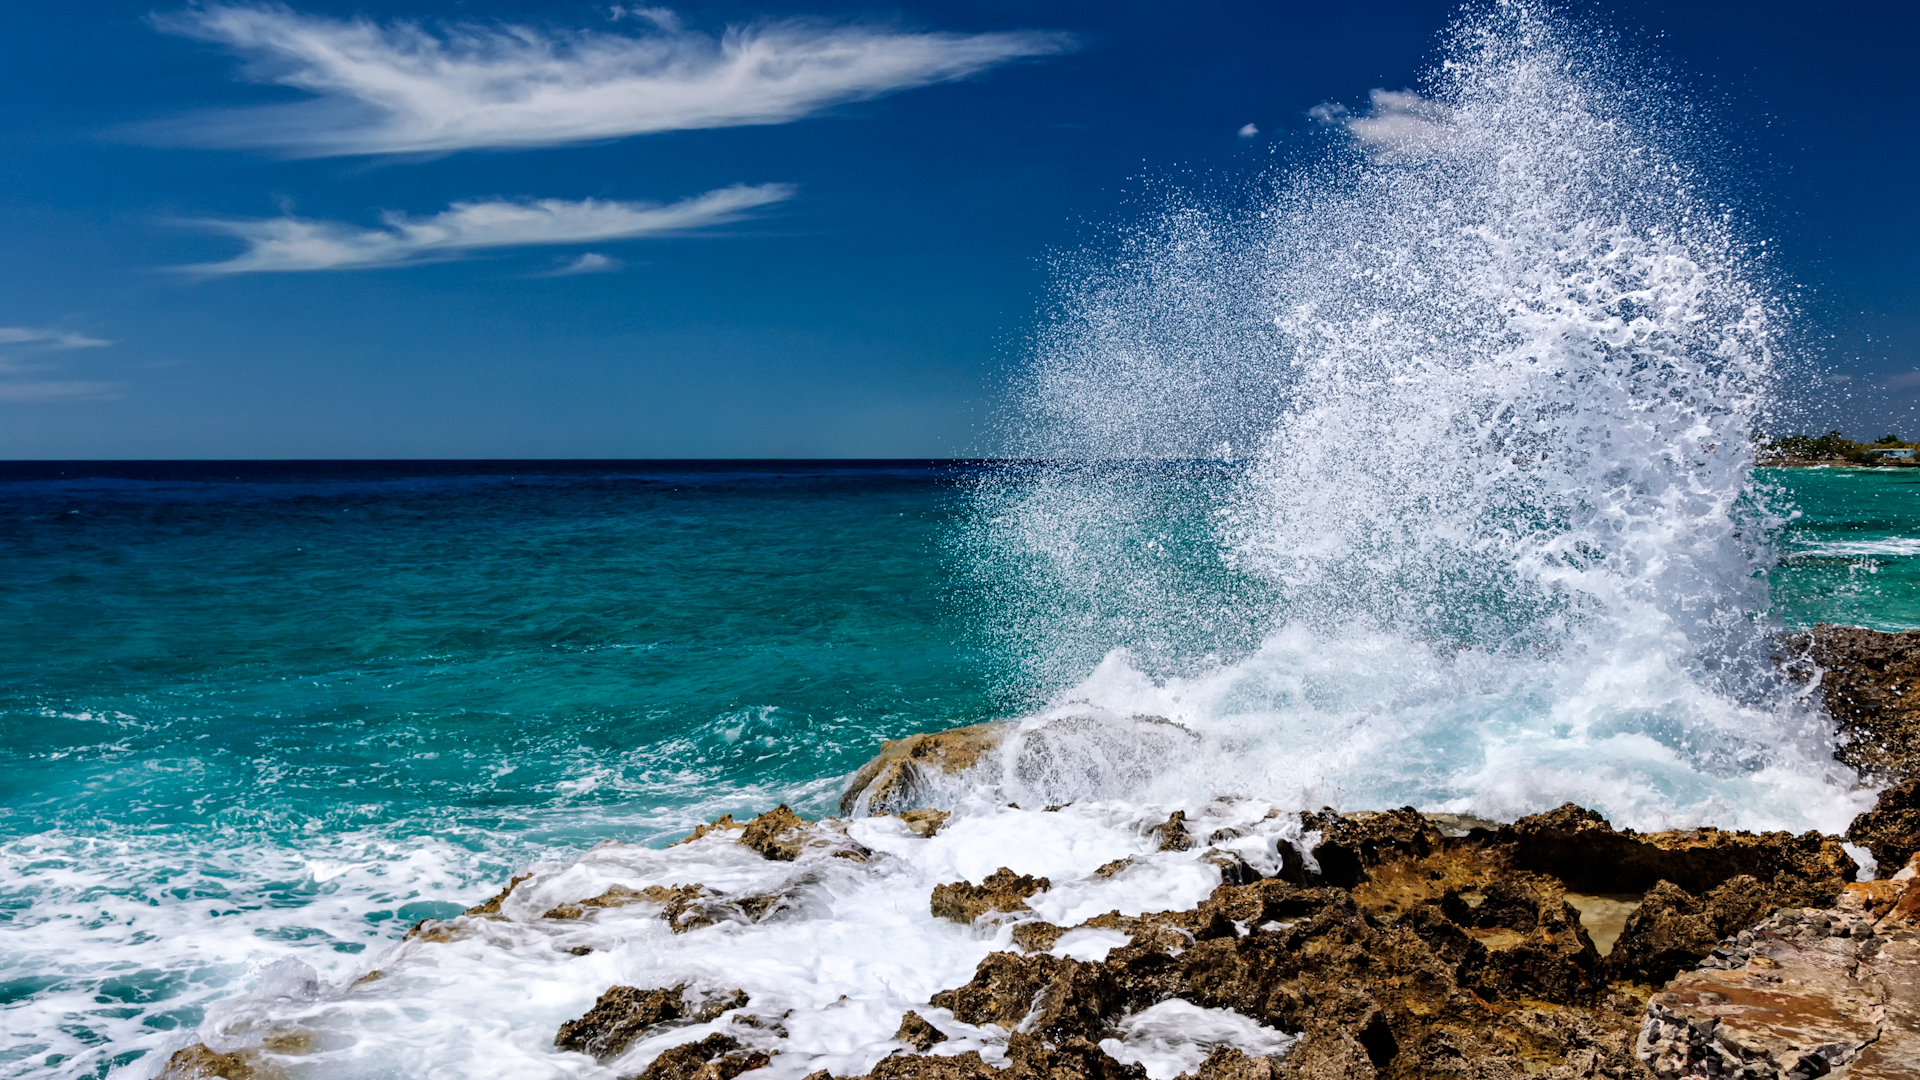 Sea Coast Sea Stones Waves Costa Rica Mexico Desktop Wallpapers Hd 